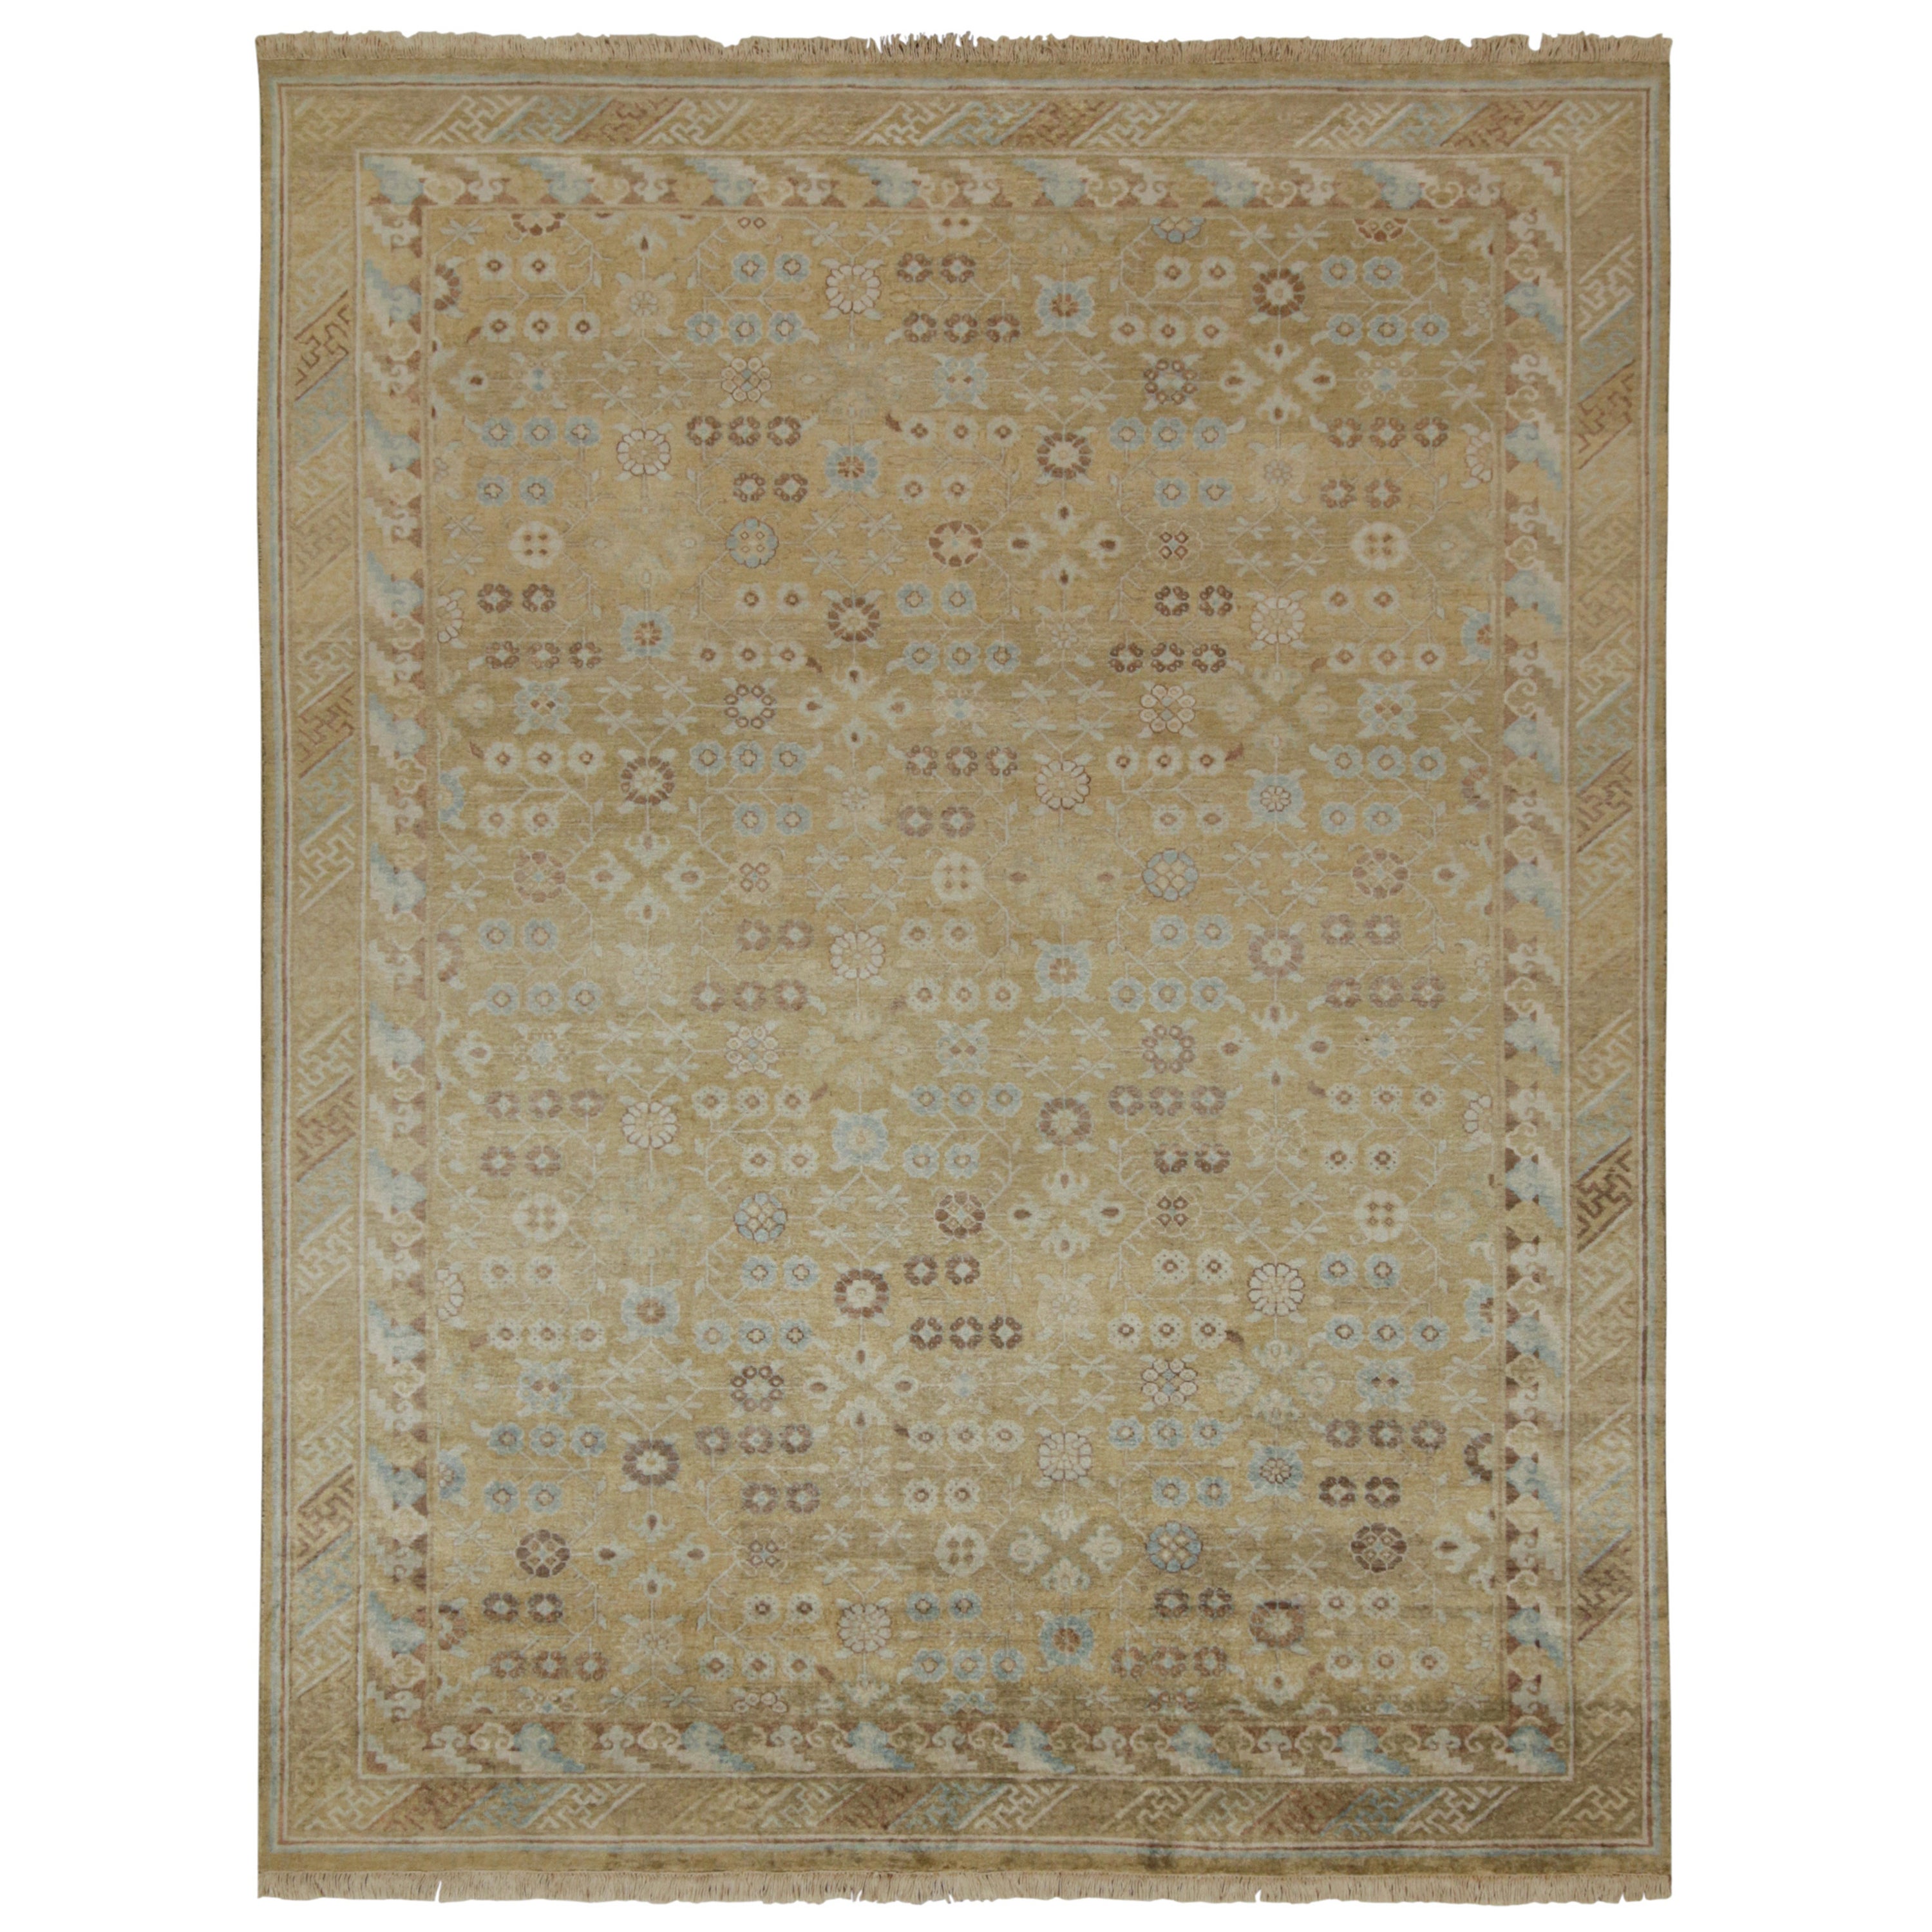 Rug & Kilim's Teppich im Khotan-Stil mit blauem und braun-beigefarbenem geometrischem Muster